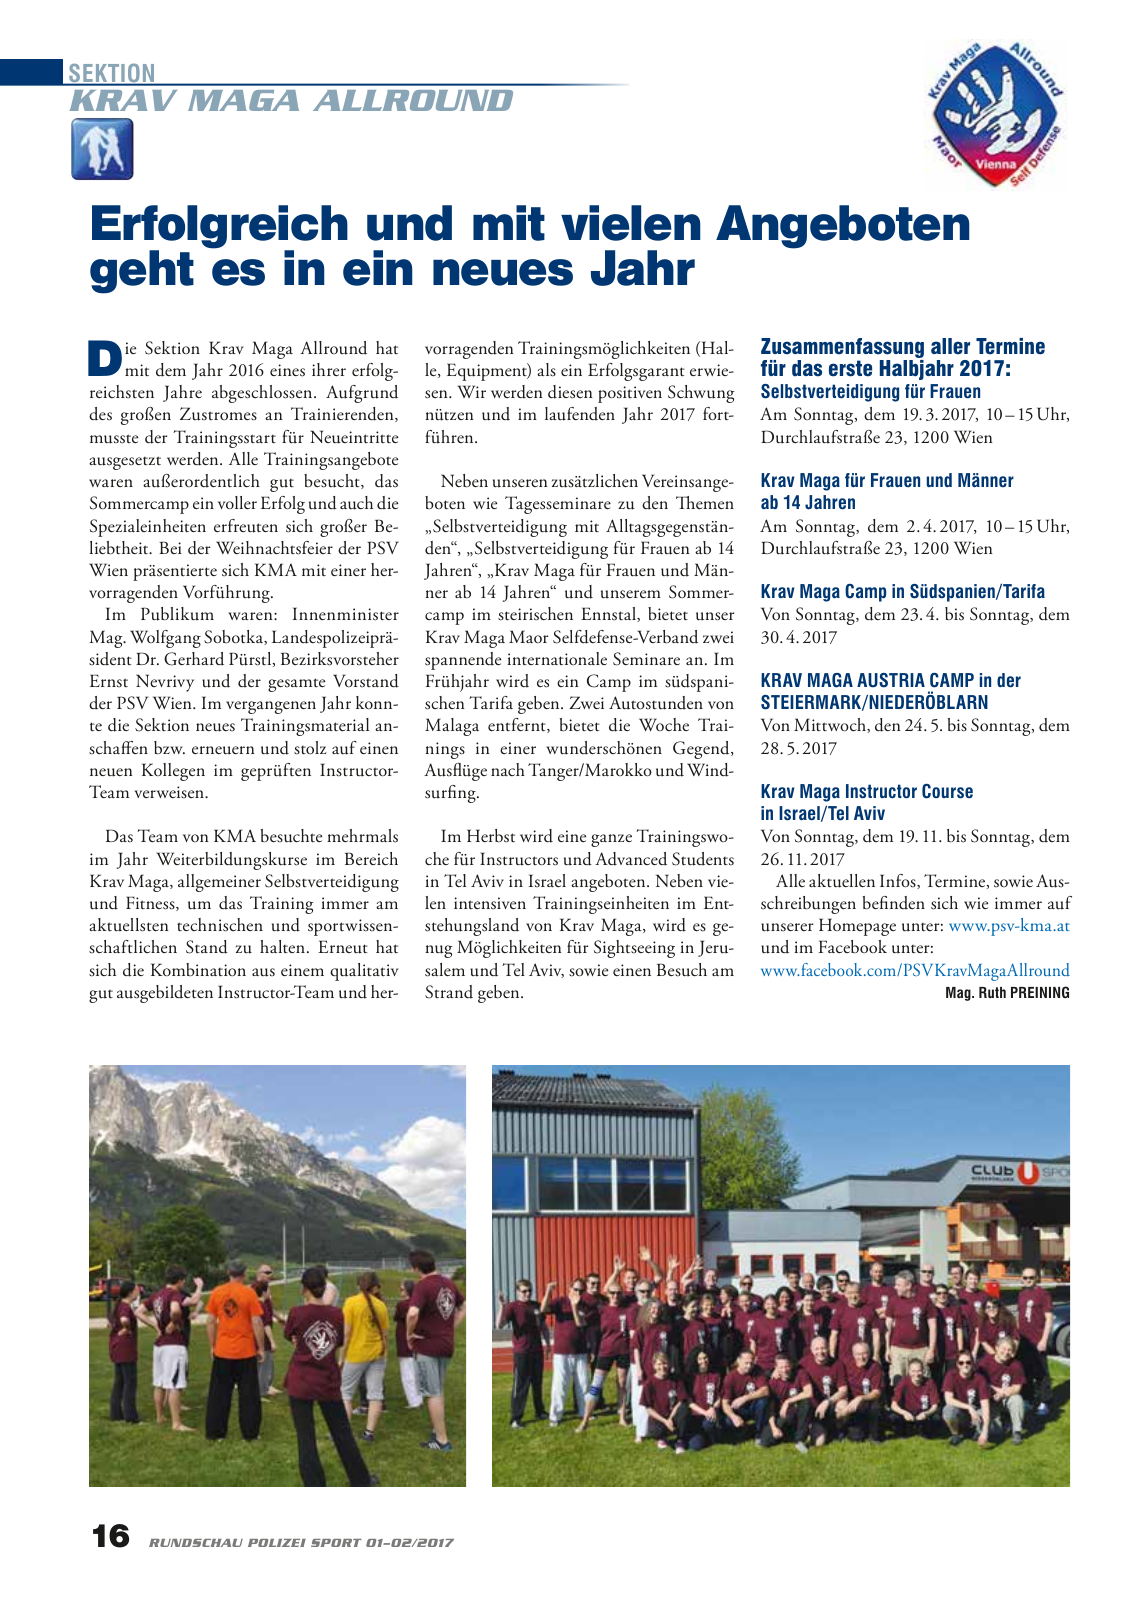 Vorschau Rundschau Polizei Sport 01-02/2017 Seite 16